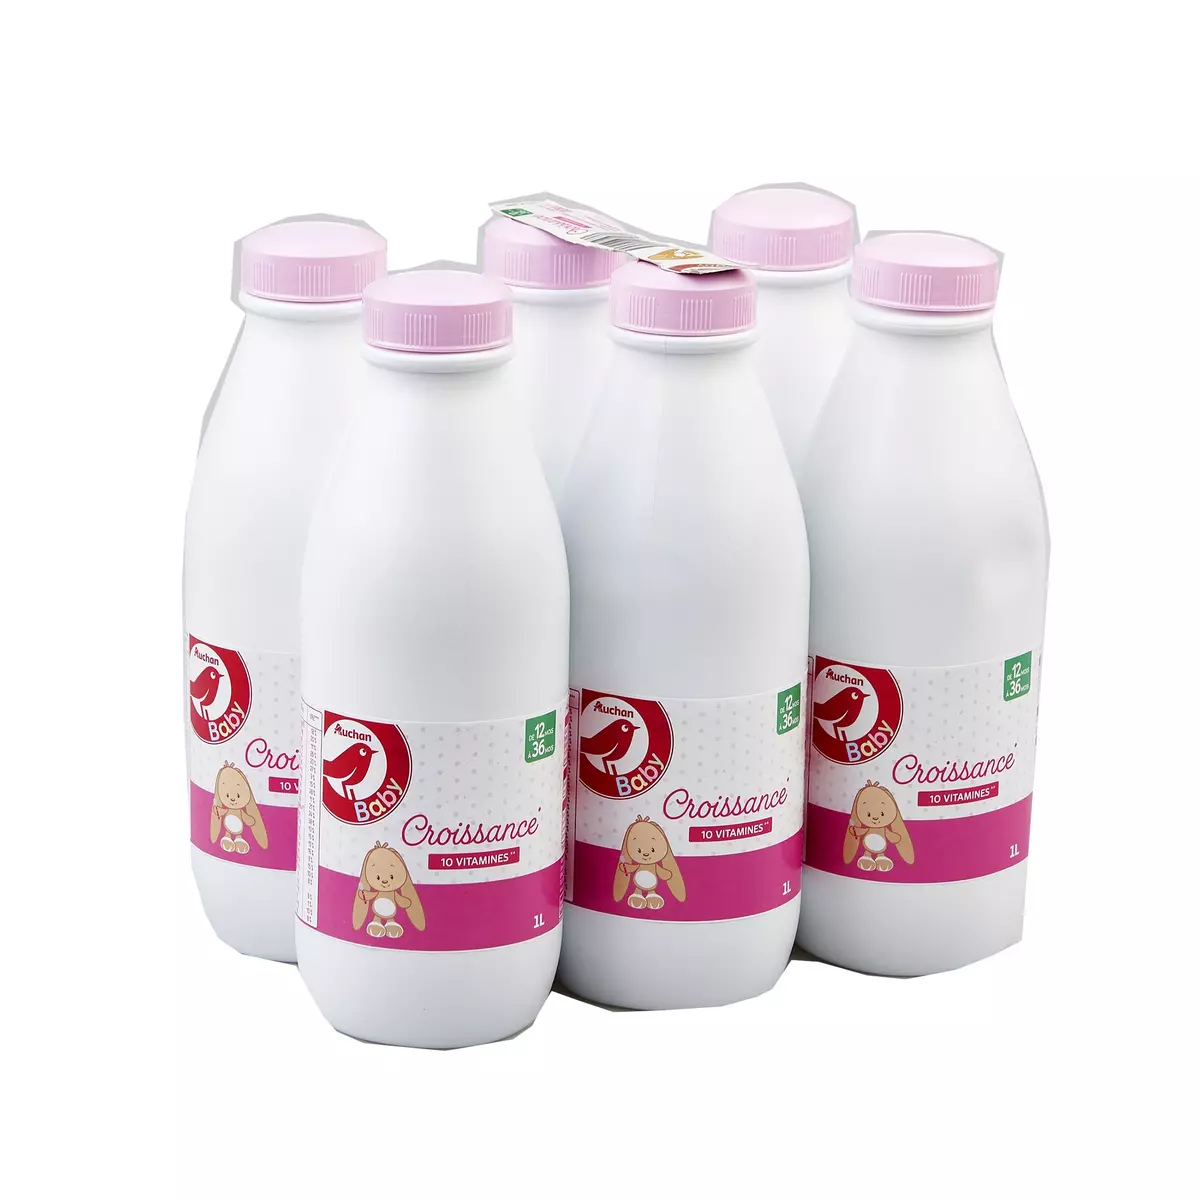 CANDIA Baby 3 lait de croissance liquide dès 12 mois 6x1l pas cher 